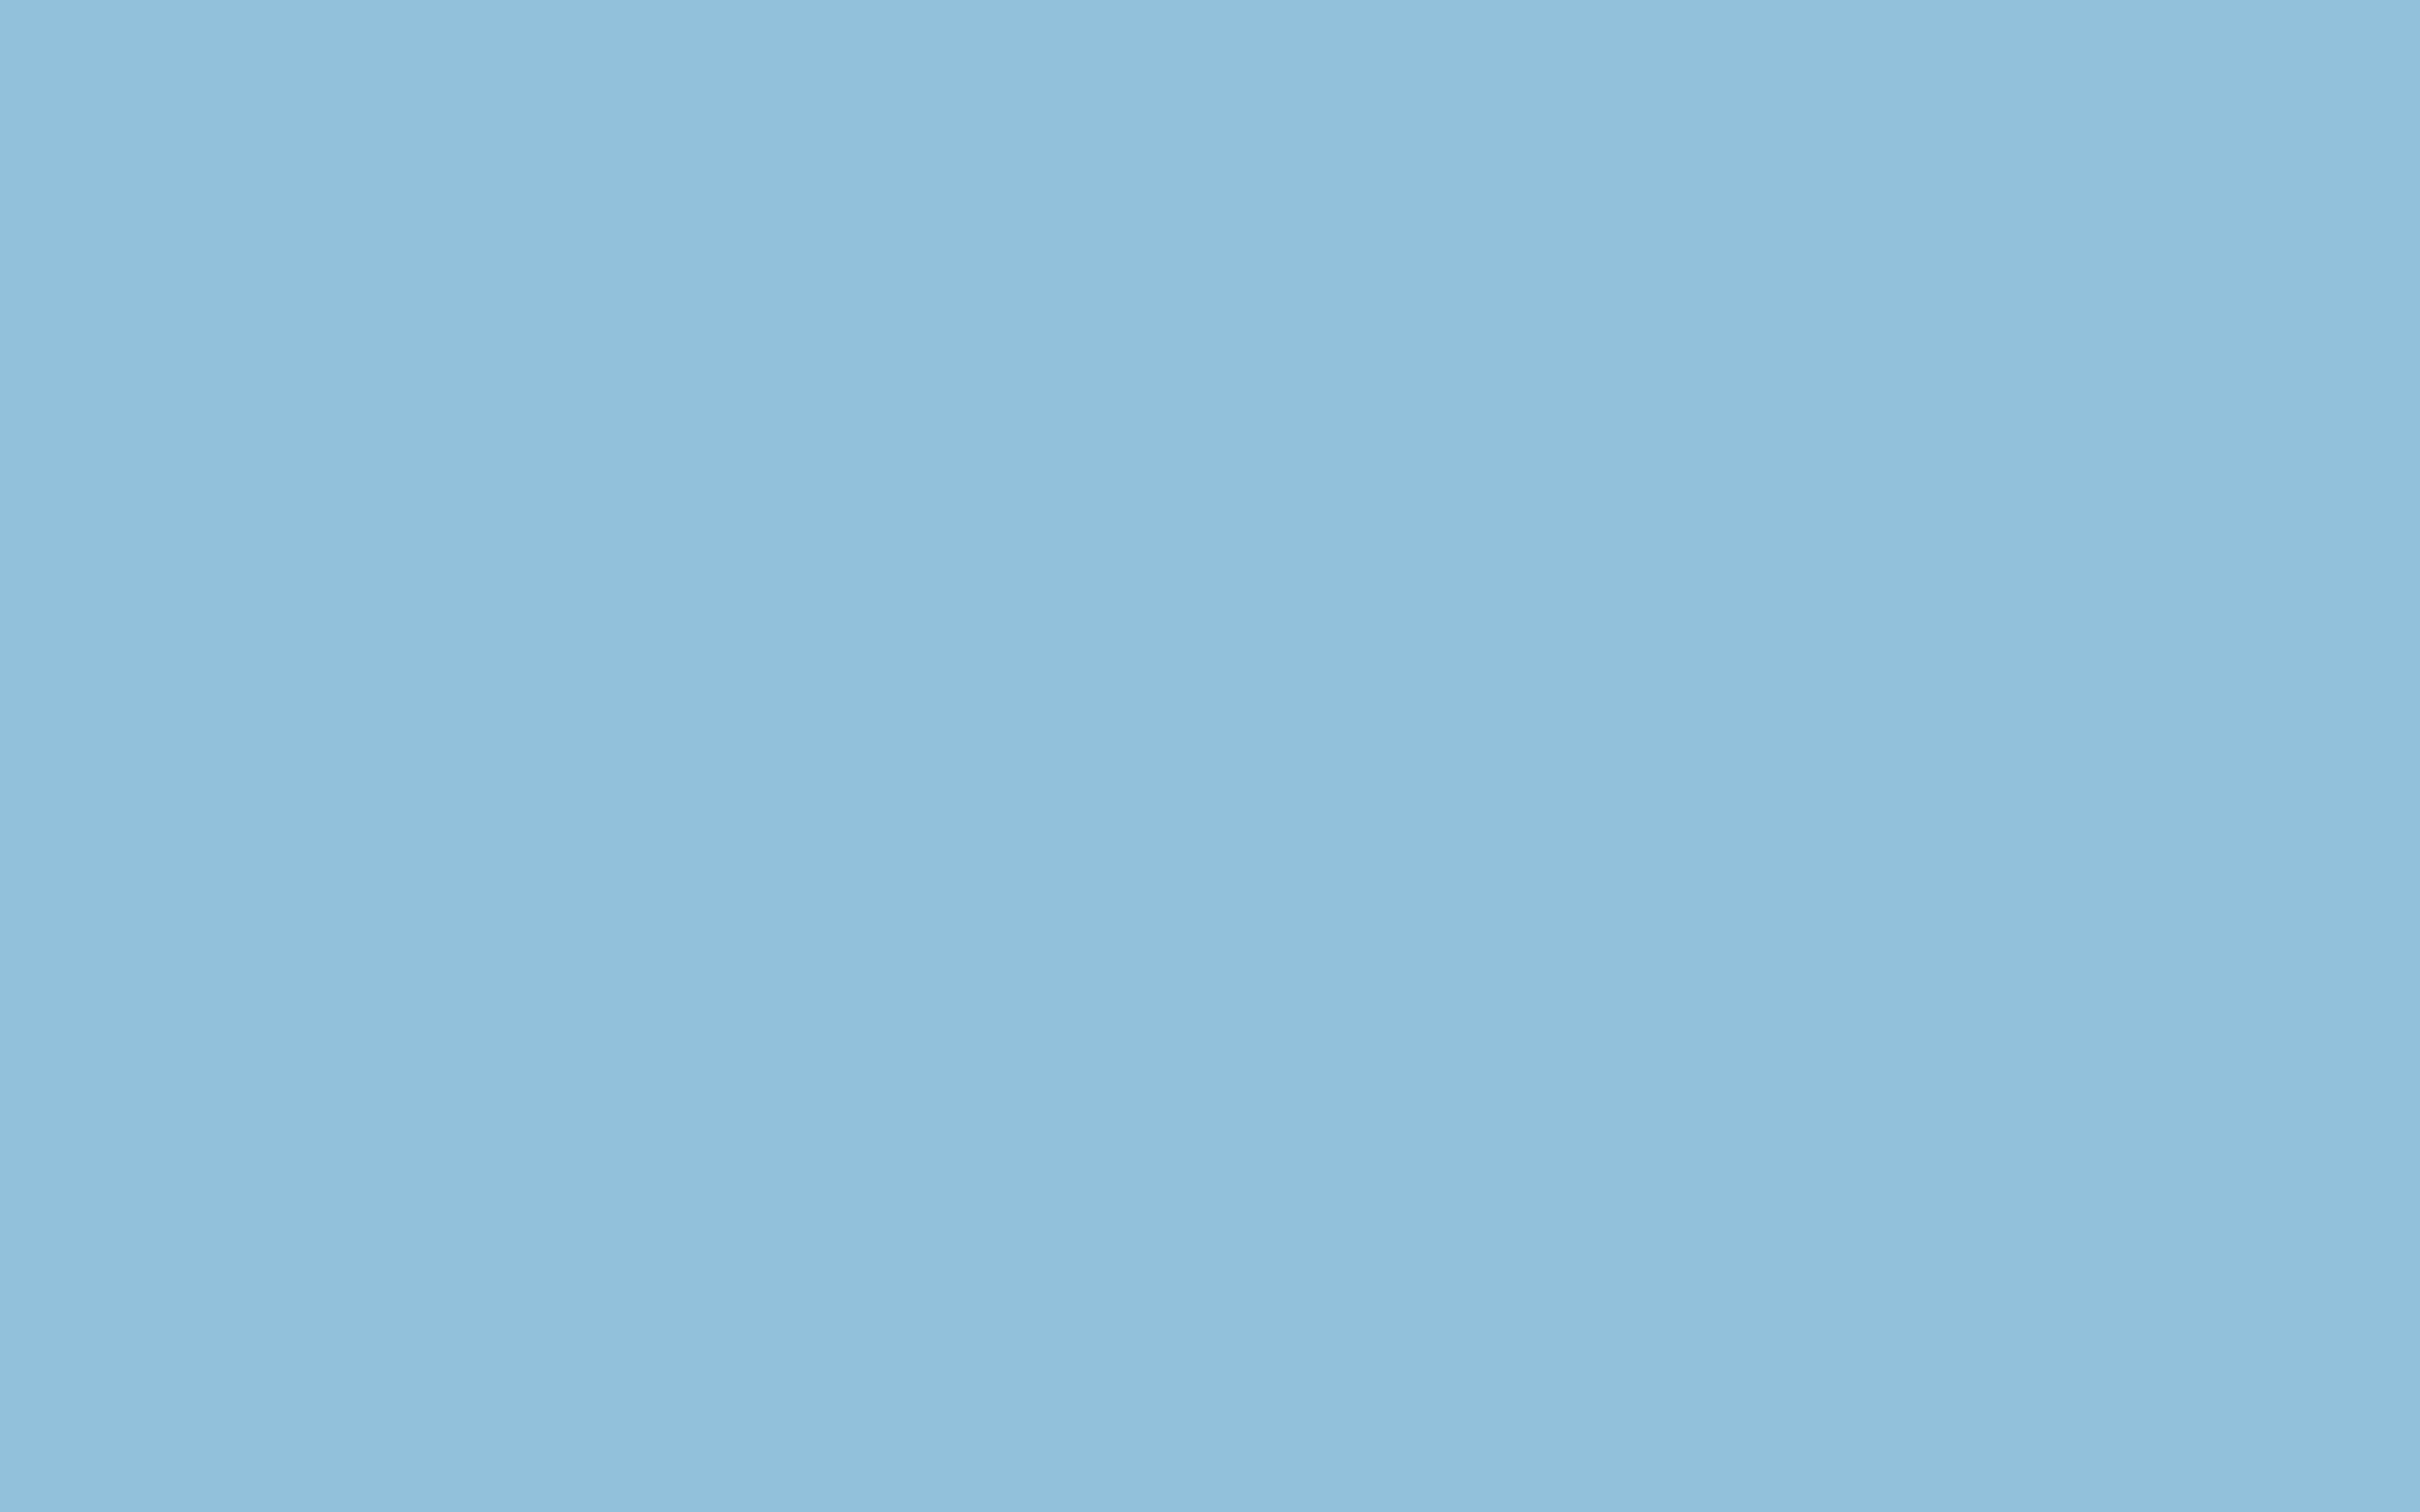 Cơn sốt màu xanh nhạt đang làm mưa làm gió trong làng thiết kế nền tảng ảnh. Bạn đang tìm kiếm một hình nền xanh nhạt để tạo sự yên tâm và thanh tịnh cho mình? Hãy xem hình ảnh liên quan để cảm nhận sự dịu nhẹ và đặc trưng của baby blue wallpaper.